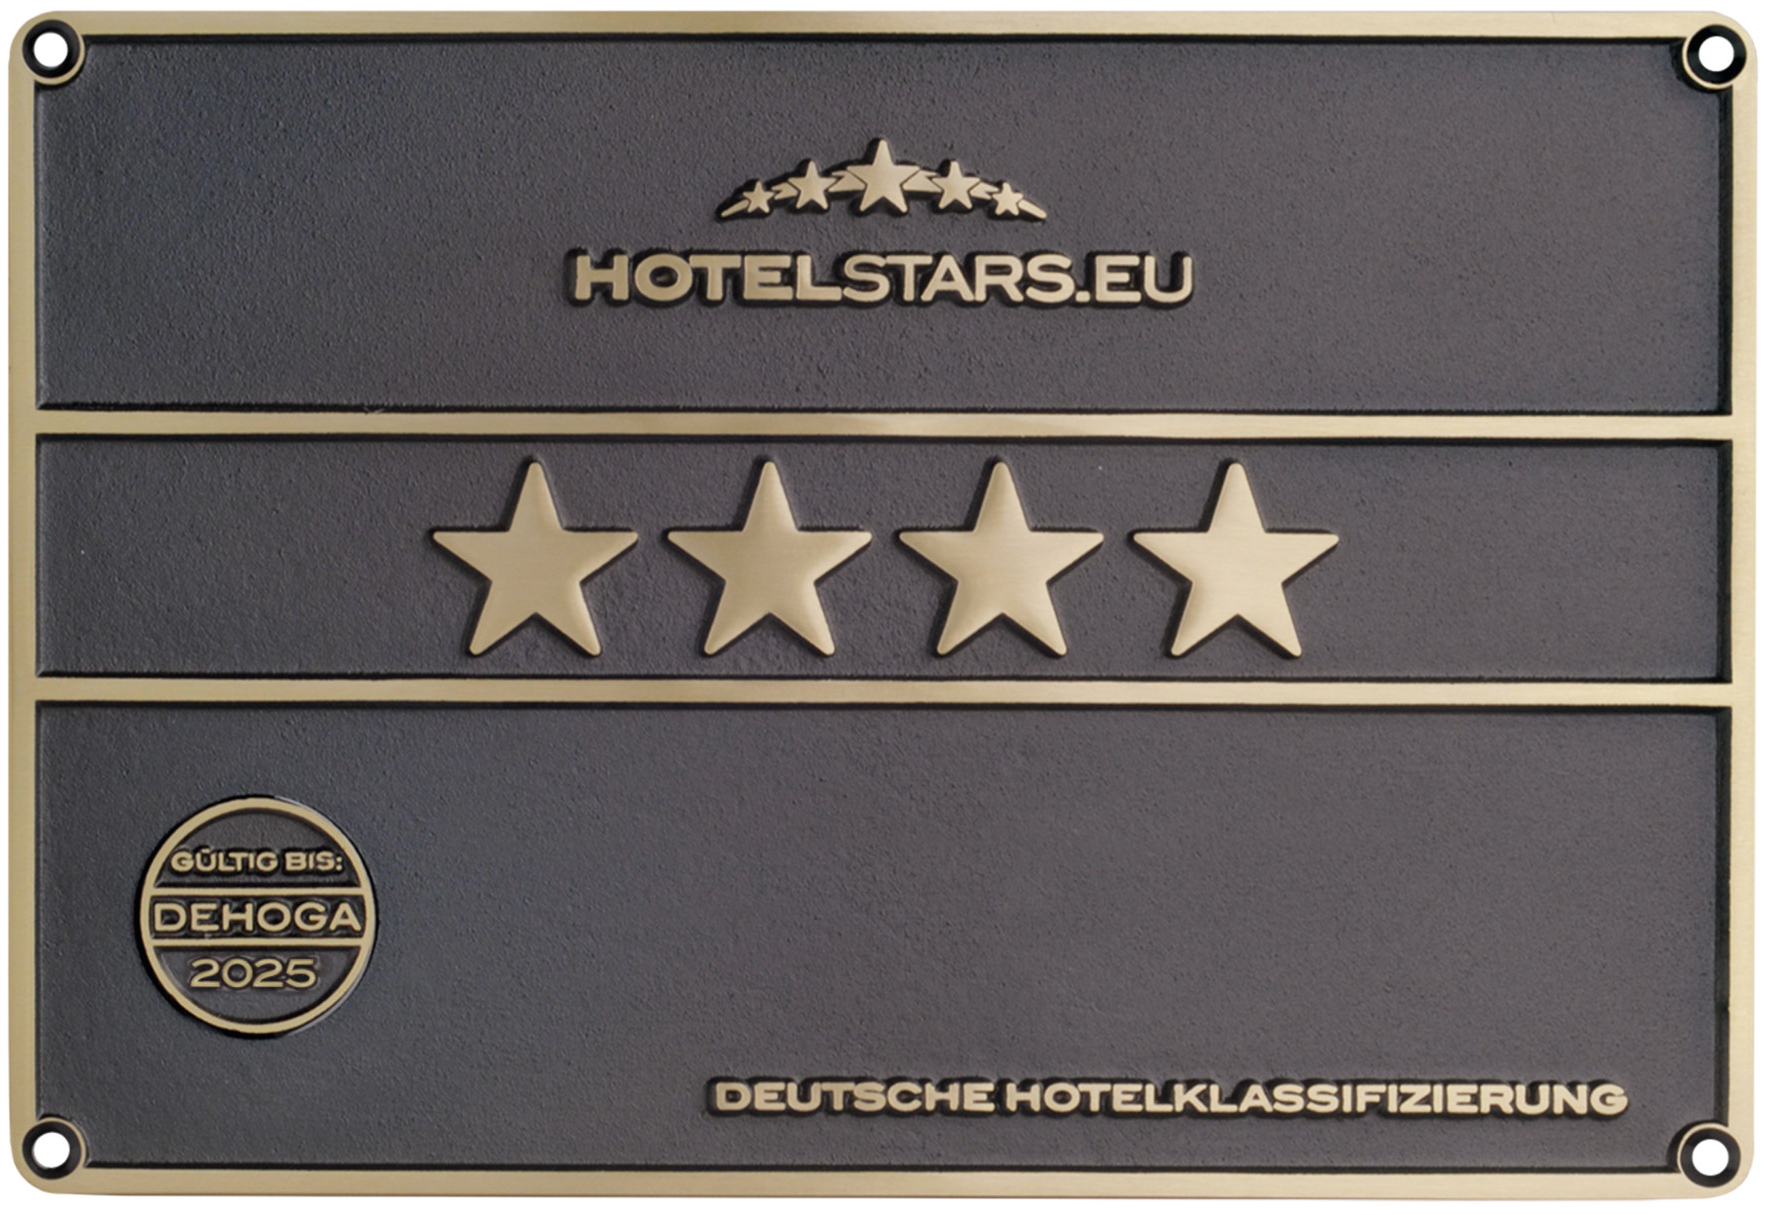 Deutsche Hotelklassifizierung <br />
4****